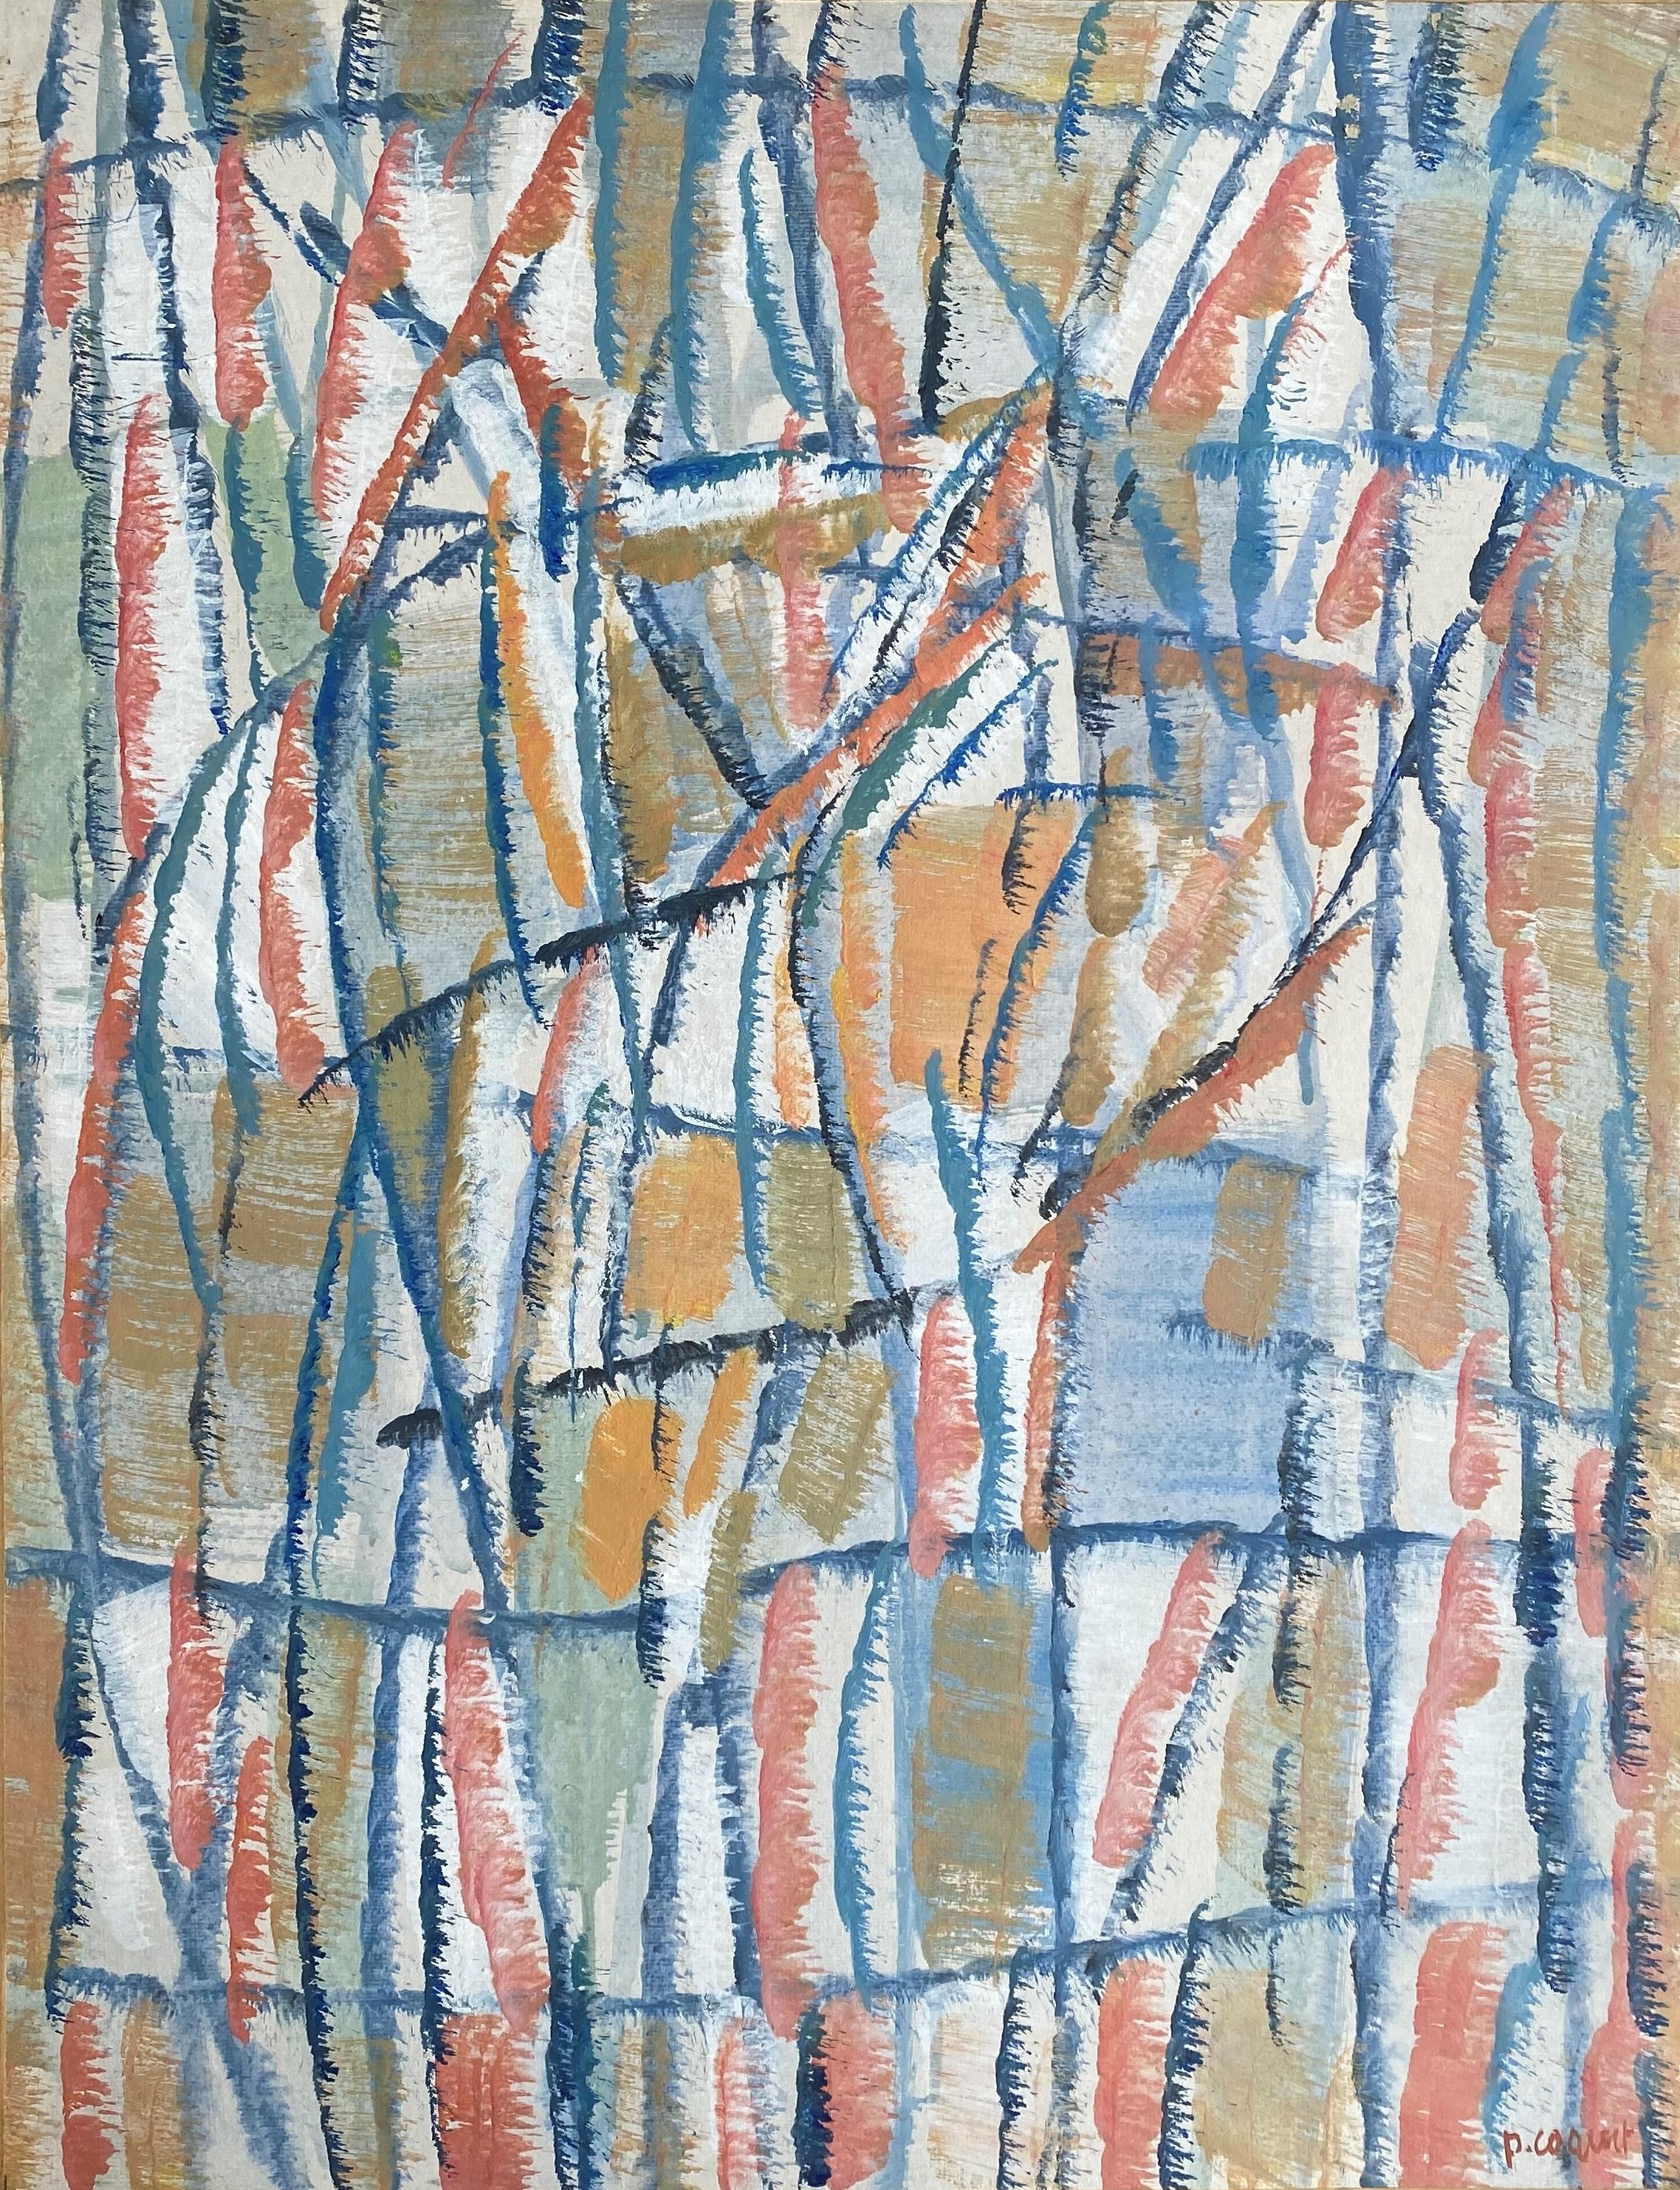 Pierre Coquet - Composition abstraite
Numéro de référence A1
Encadrement avec un cadre flottant en chêne naturel
70 x 55 cm cadre inclus (65 x 50 cm sans cadre)
Cette œuvre est peinte à l'huile sur un papier qui est monté sur une planche et placé